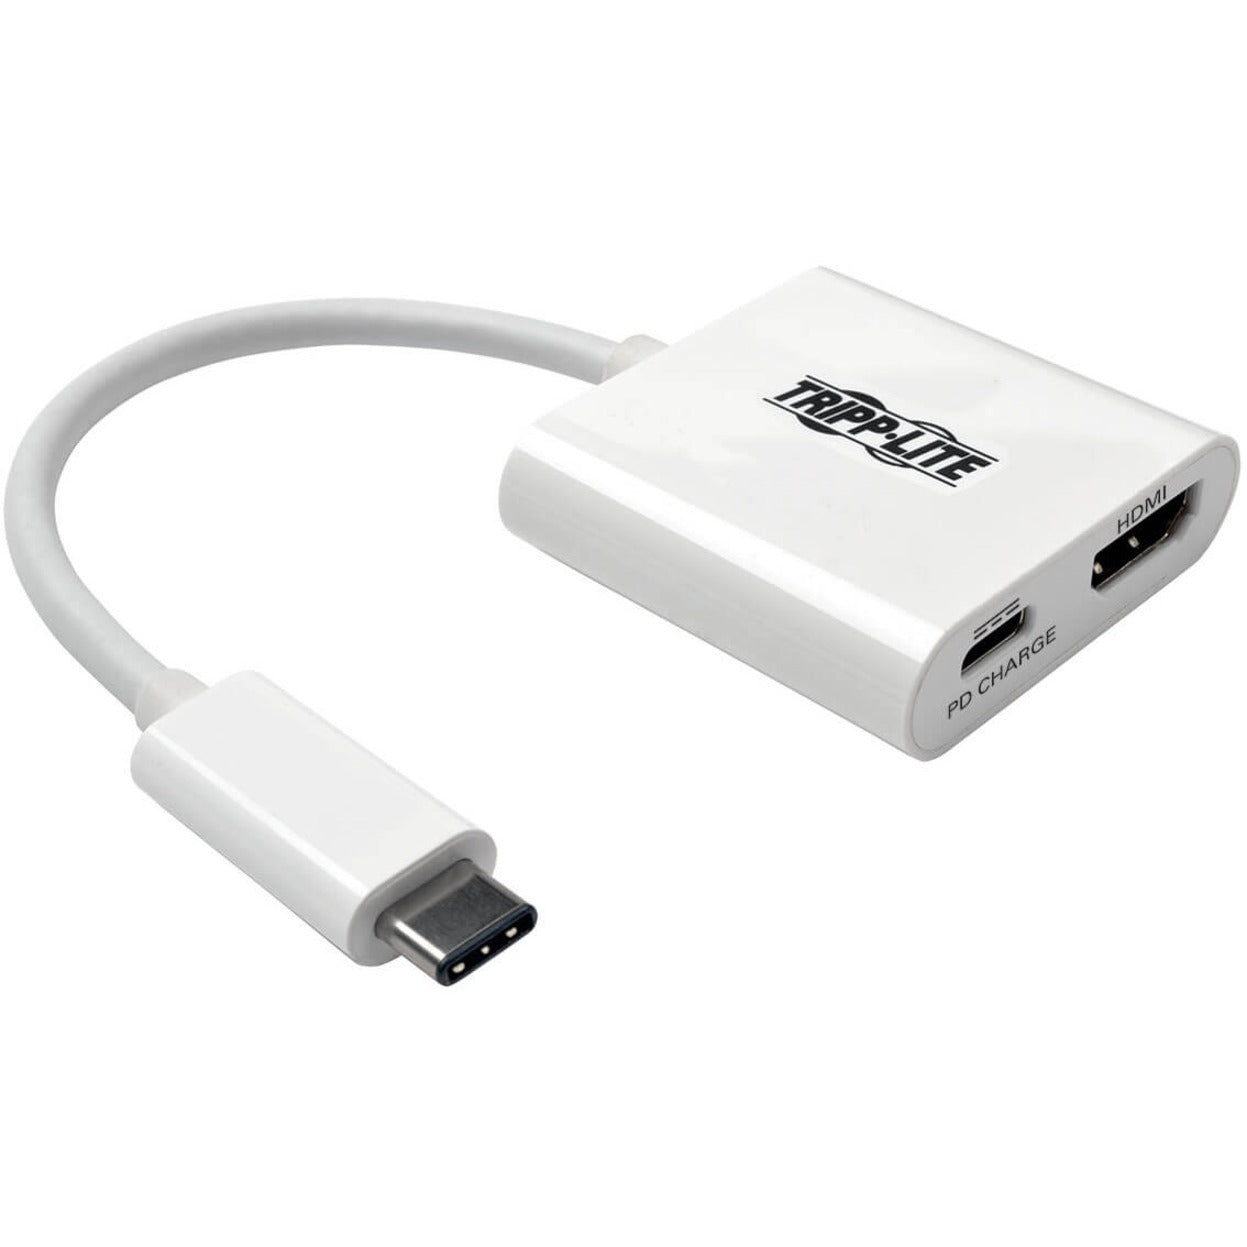 Tripp Lite U444-06N-H4-C USB 3.1 Gen 1 USB-C to HDMI 4K Adapter, USB-A Hub and Charging Ports